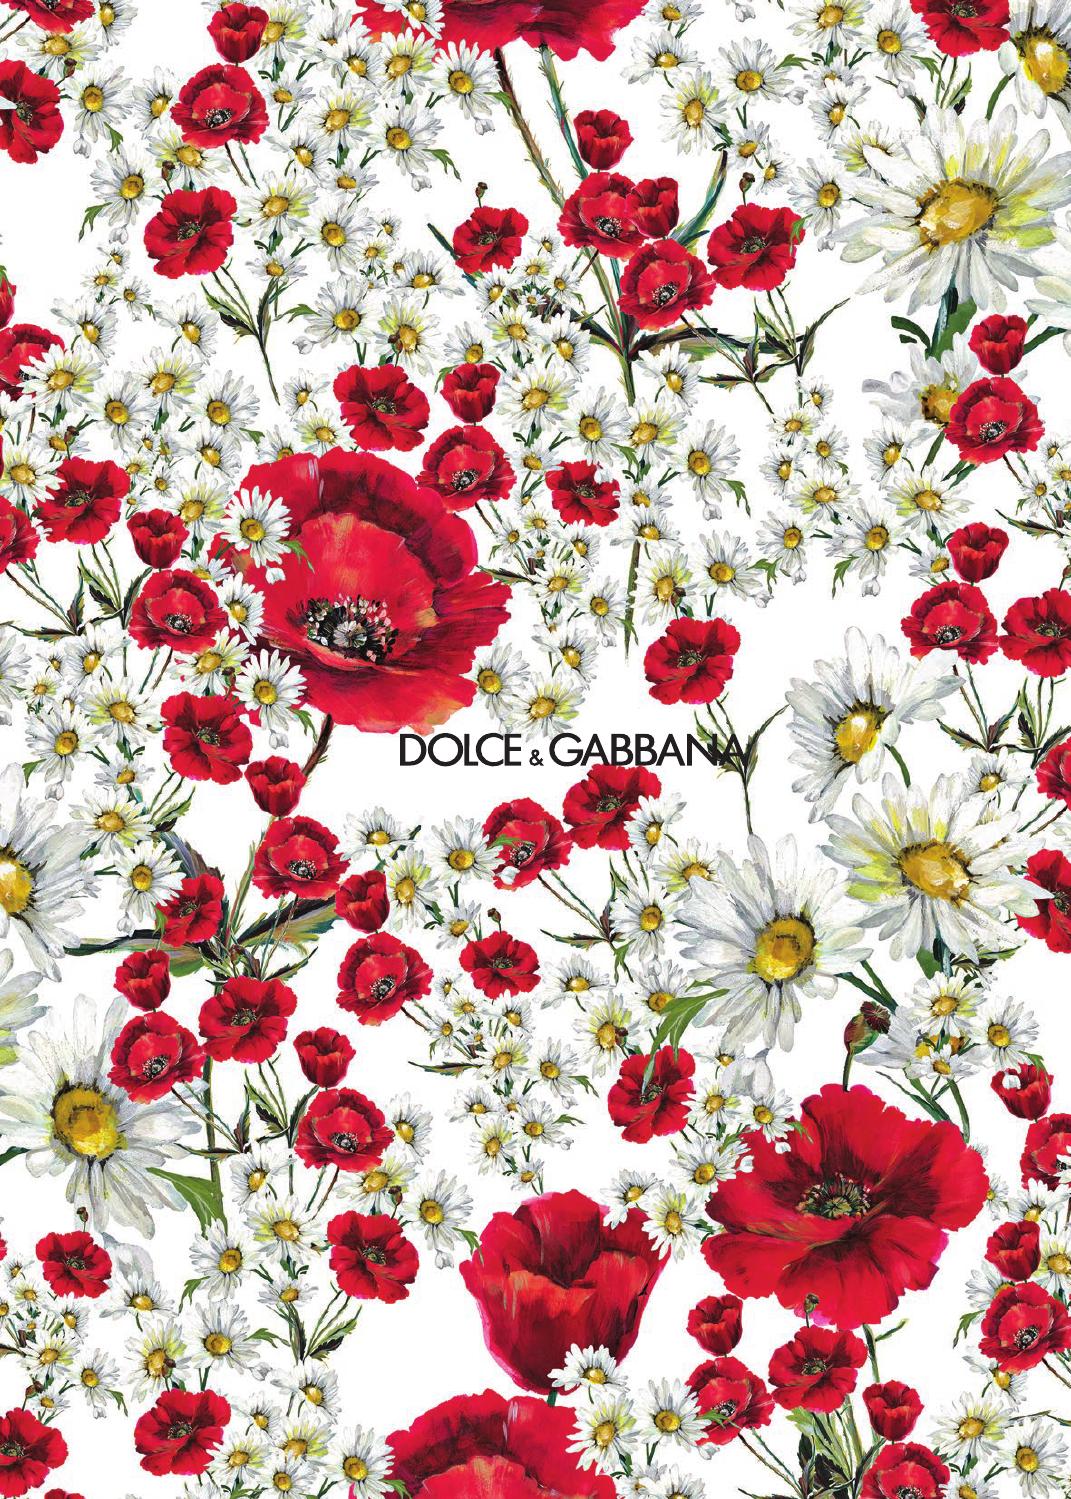 dolce und gabbana tapete,blume,rot,pflanze,blütenblatt,schnittblumen